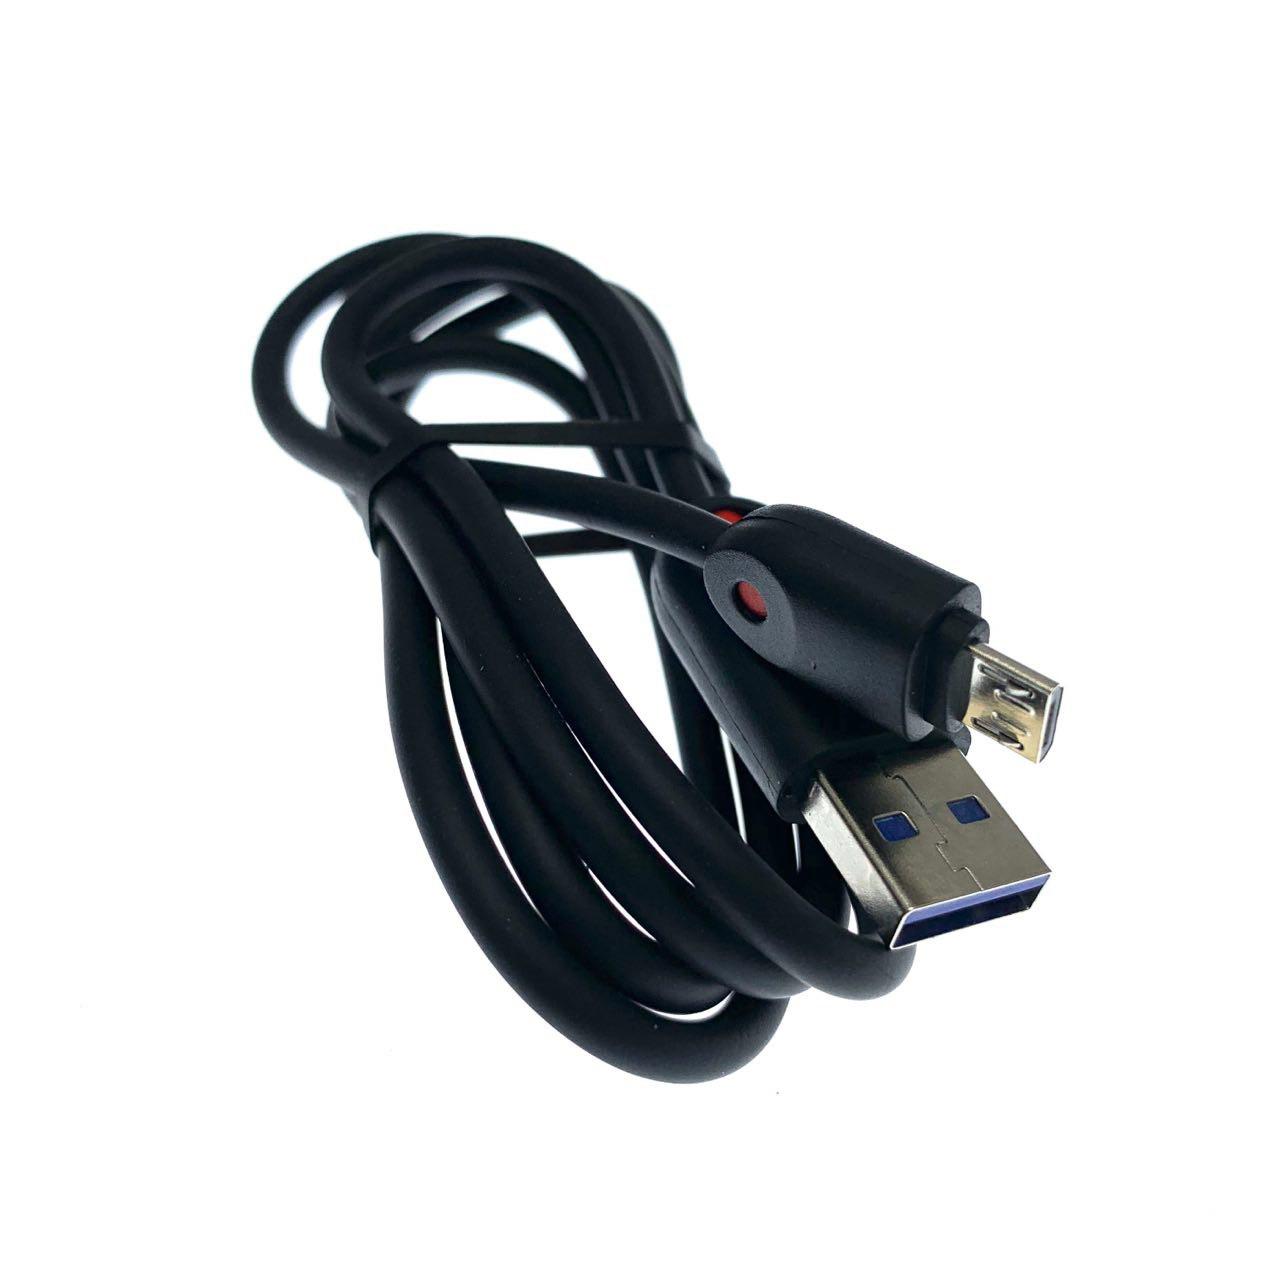 USB Дата-кабель "R15" micro USB силиконовый 1 метр, цвет оболочки чёрный.